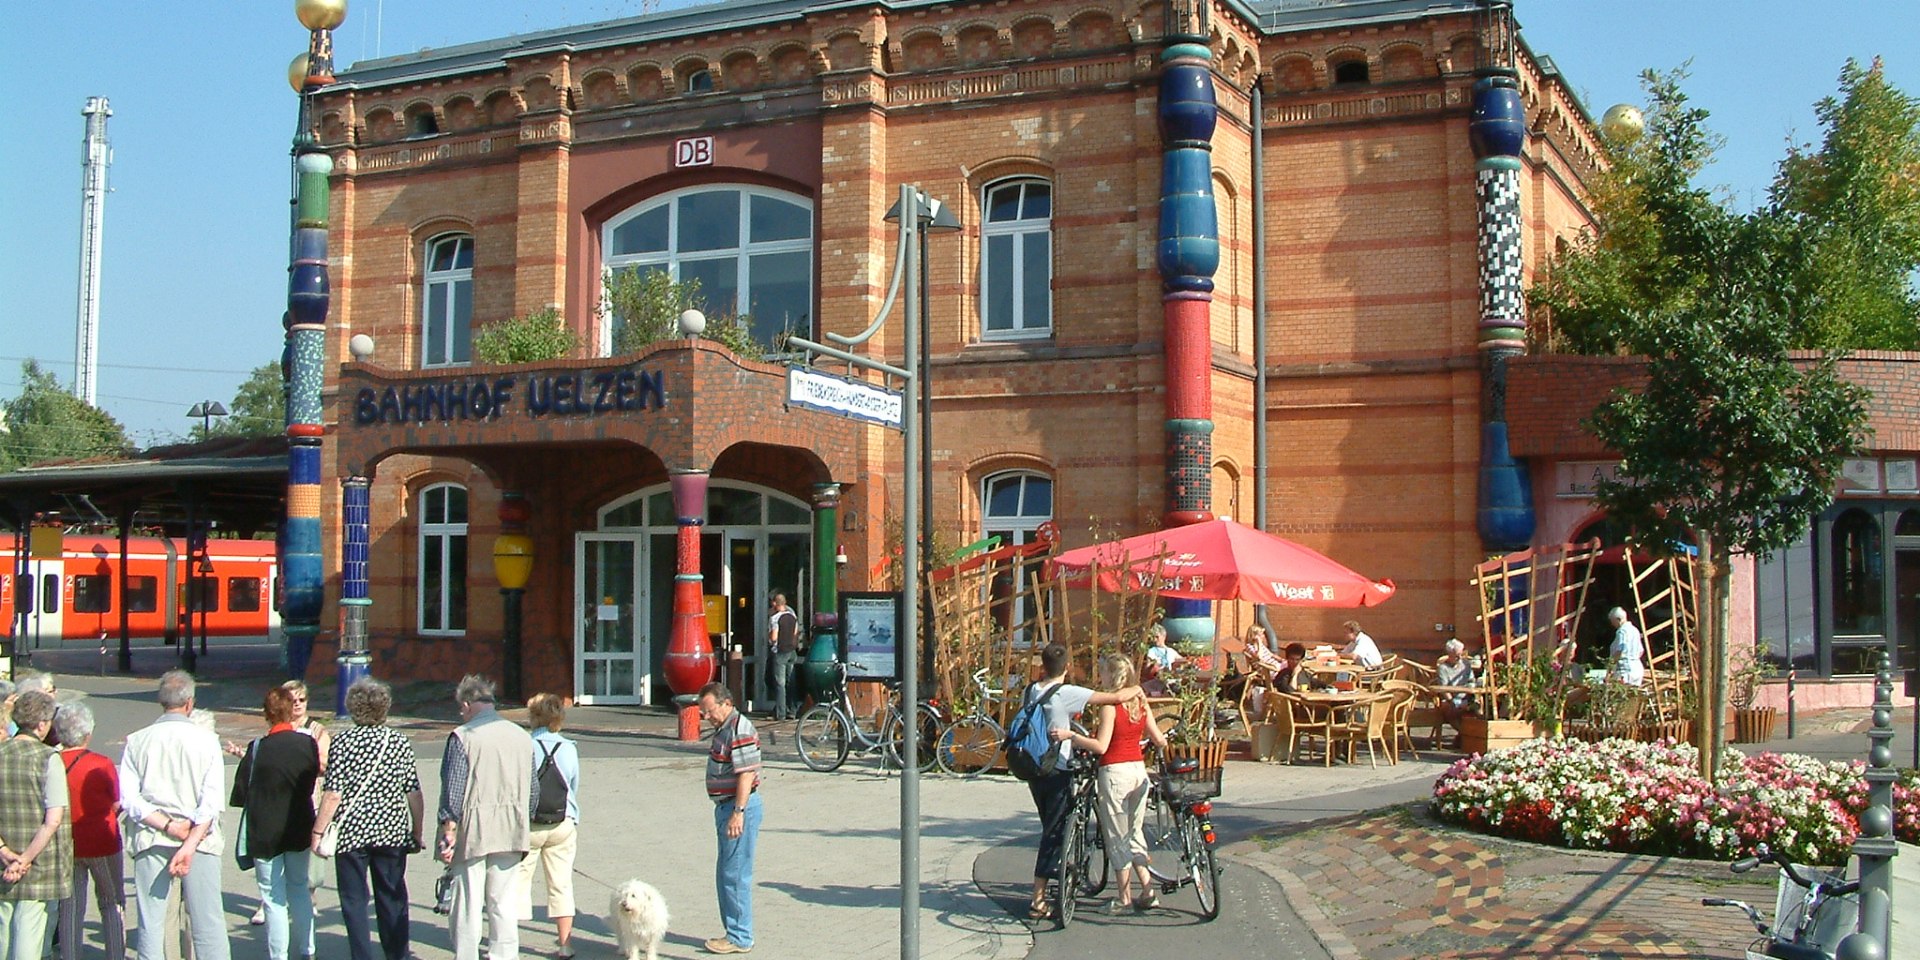 Hundertwasser train station in Uelzen, © Heideregion Uelzen